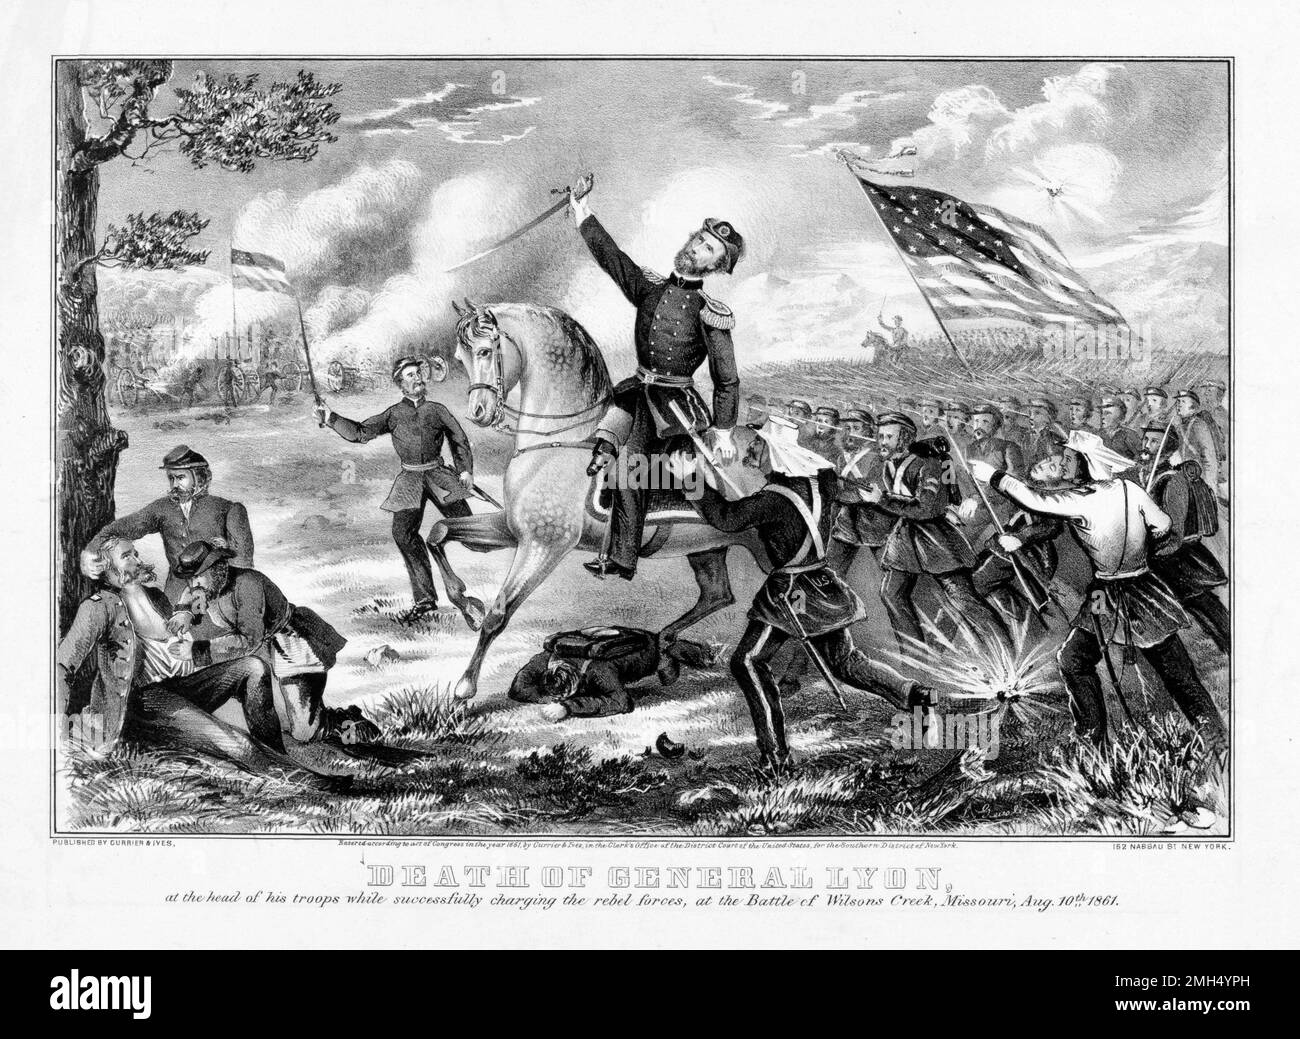 Die Schlacht von Wilson's Creek, auch bekannt als die Schlacht von Oak Hills, war eine große Schlacht in den ersten Monaten des Amerikanischen Bürgerkriegs, der am 10. August 1861 stattfand. Die Unionisten unter Nathaniel Lyon und Samuel D. Sturgis verloren an die Konföderierten unter Sterling Price und Benjamin McCulloch. General Lyon wurde während des Kampfes getötet. Dieses Bild zeigt den Tod von Lyon während einer Kavallerie. Stockfoto